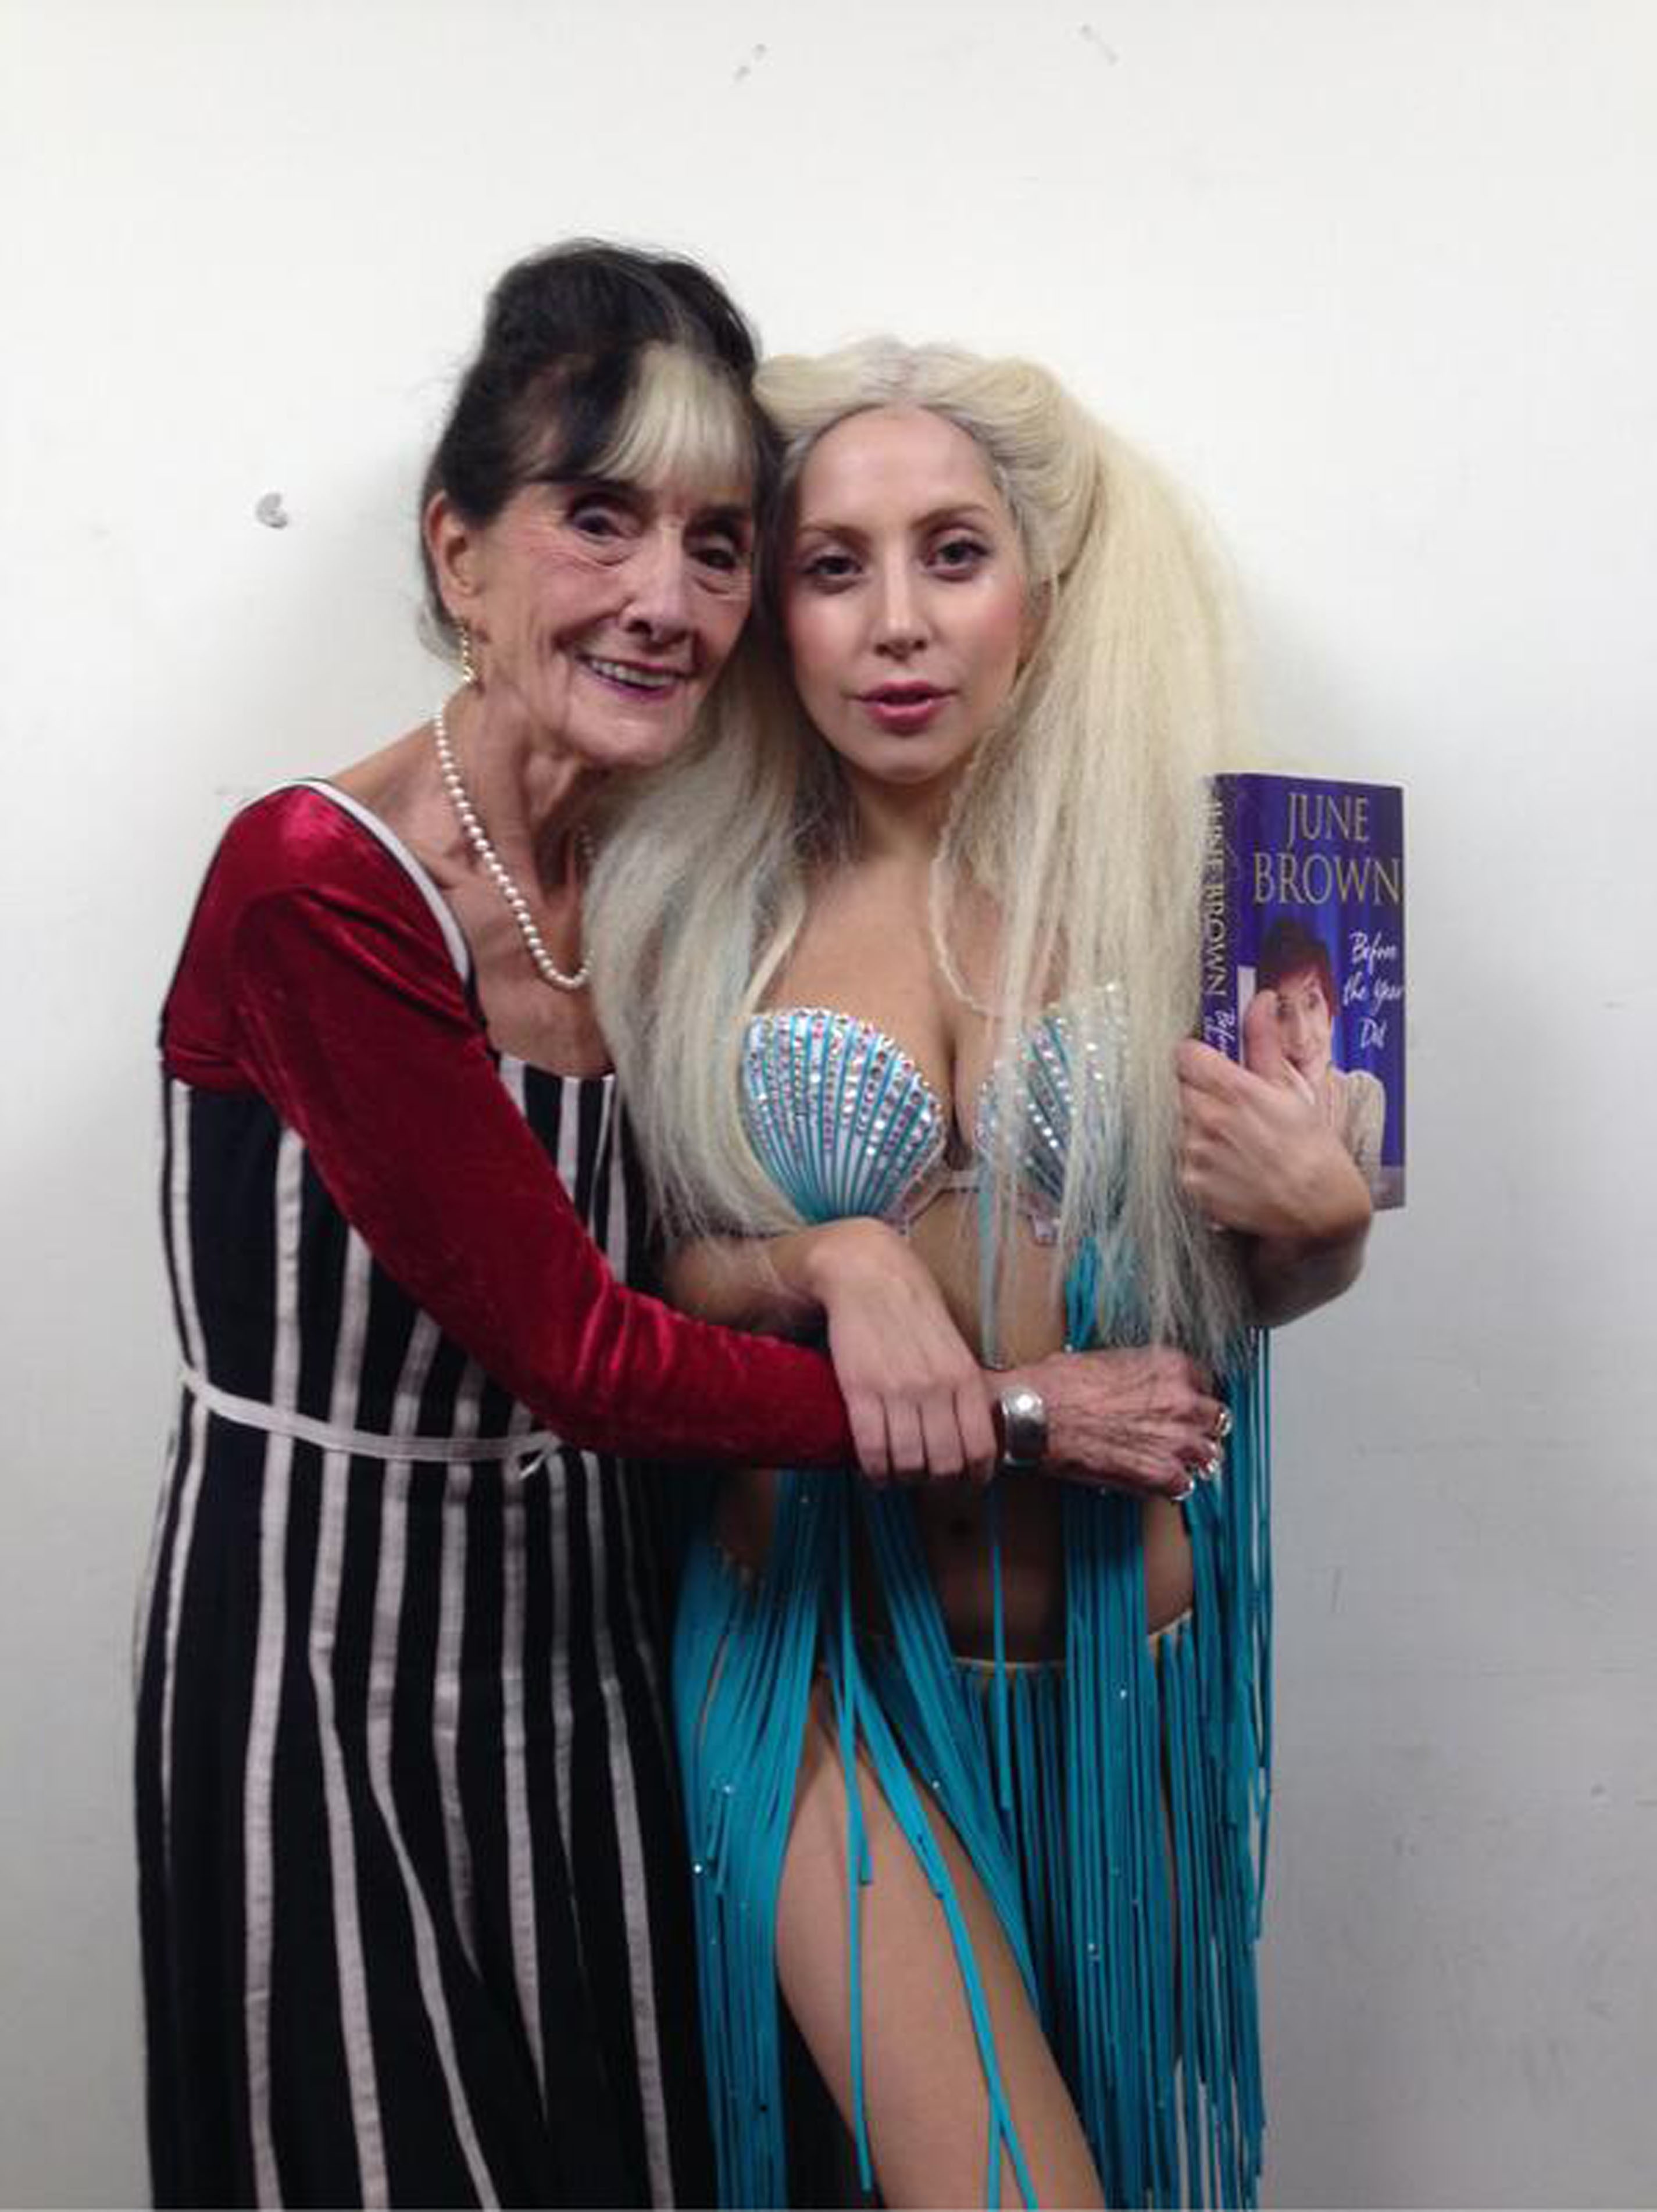 A atriz June Brown e a cantora Lady Gaga (Foto: divulgação)